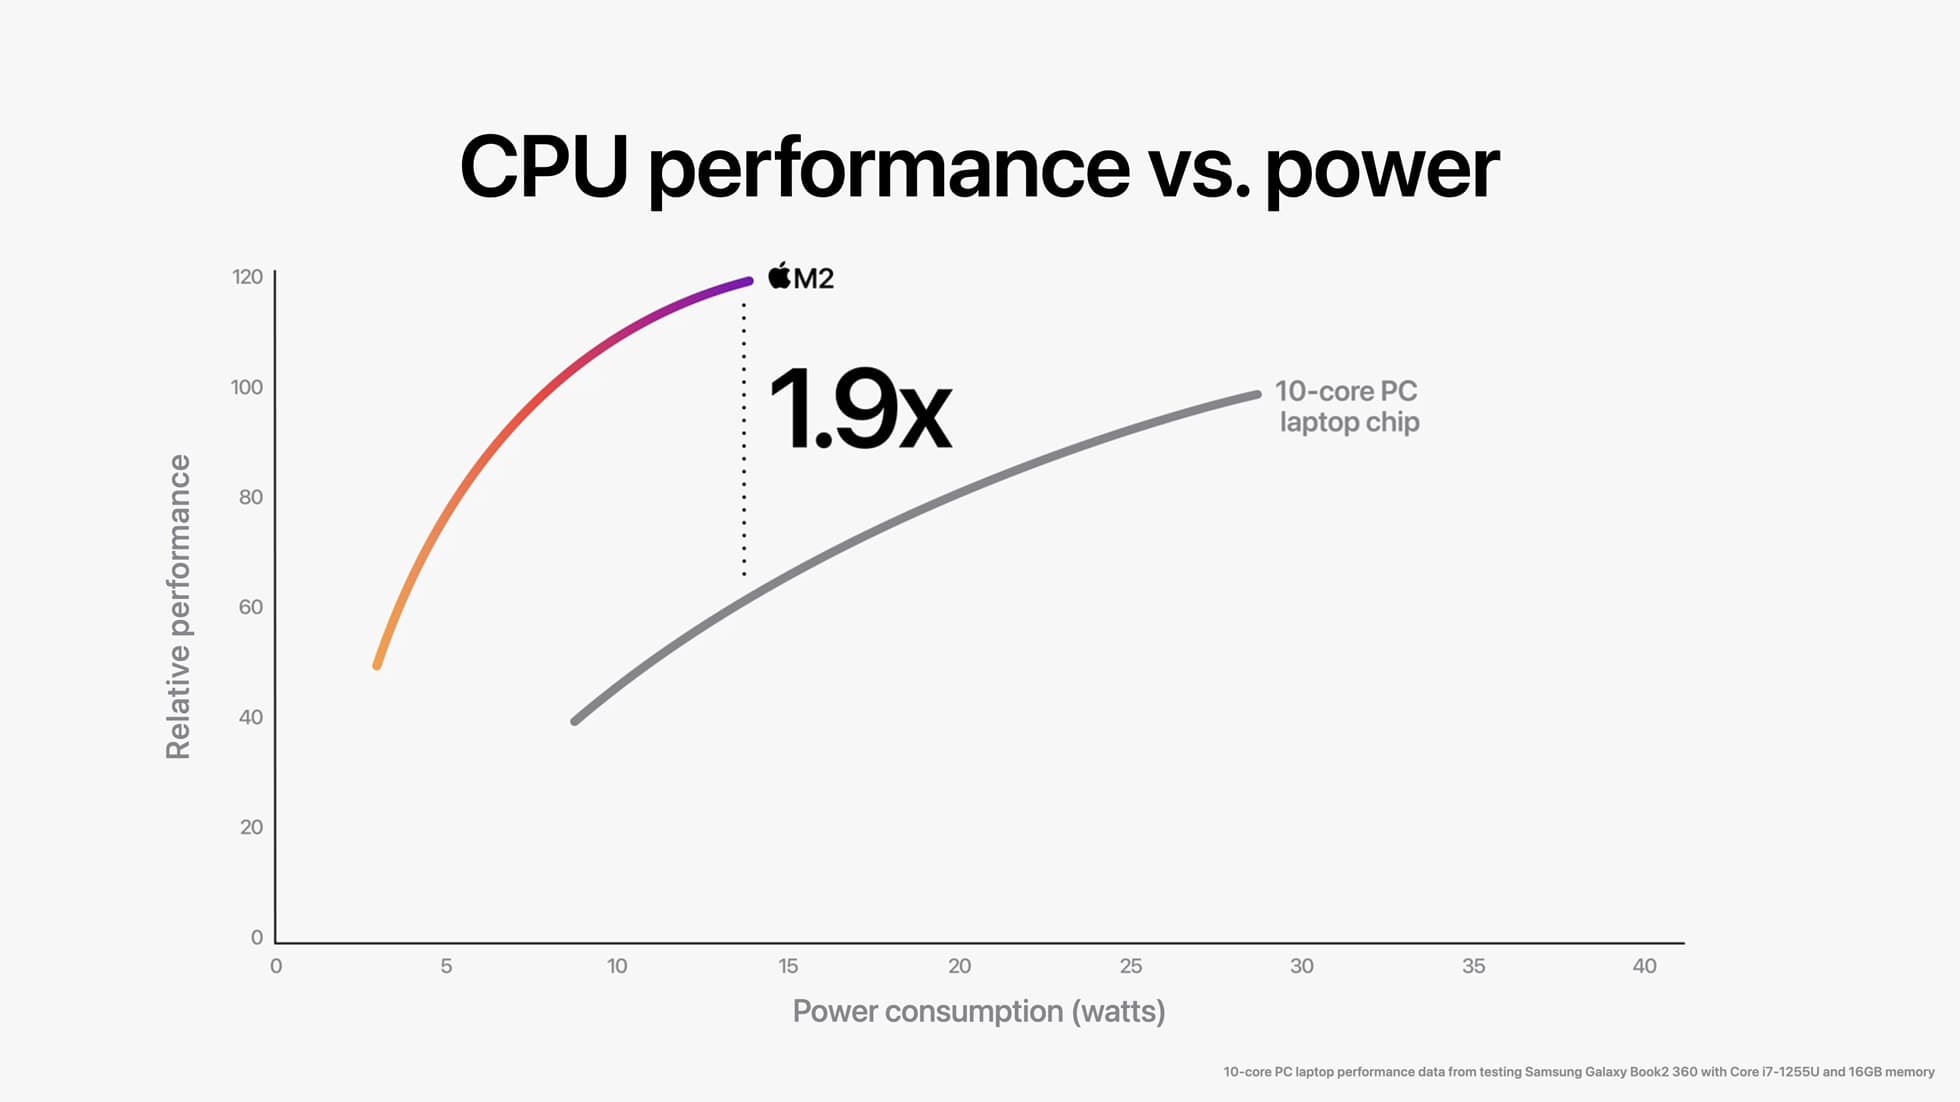 Apple M2 与 10 核心 PC 笔记型电脑晶片相比，M2 晶片的 CPU 在同等功耗下能带来近两倍的效能。